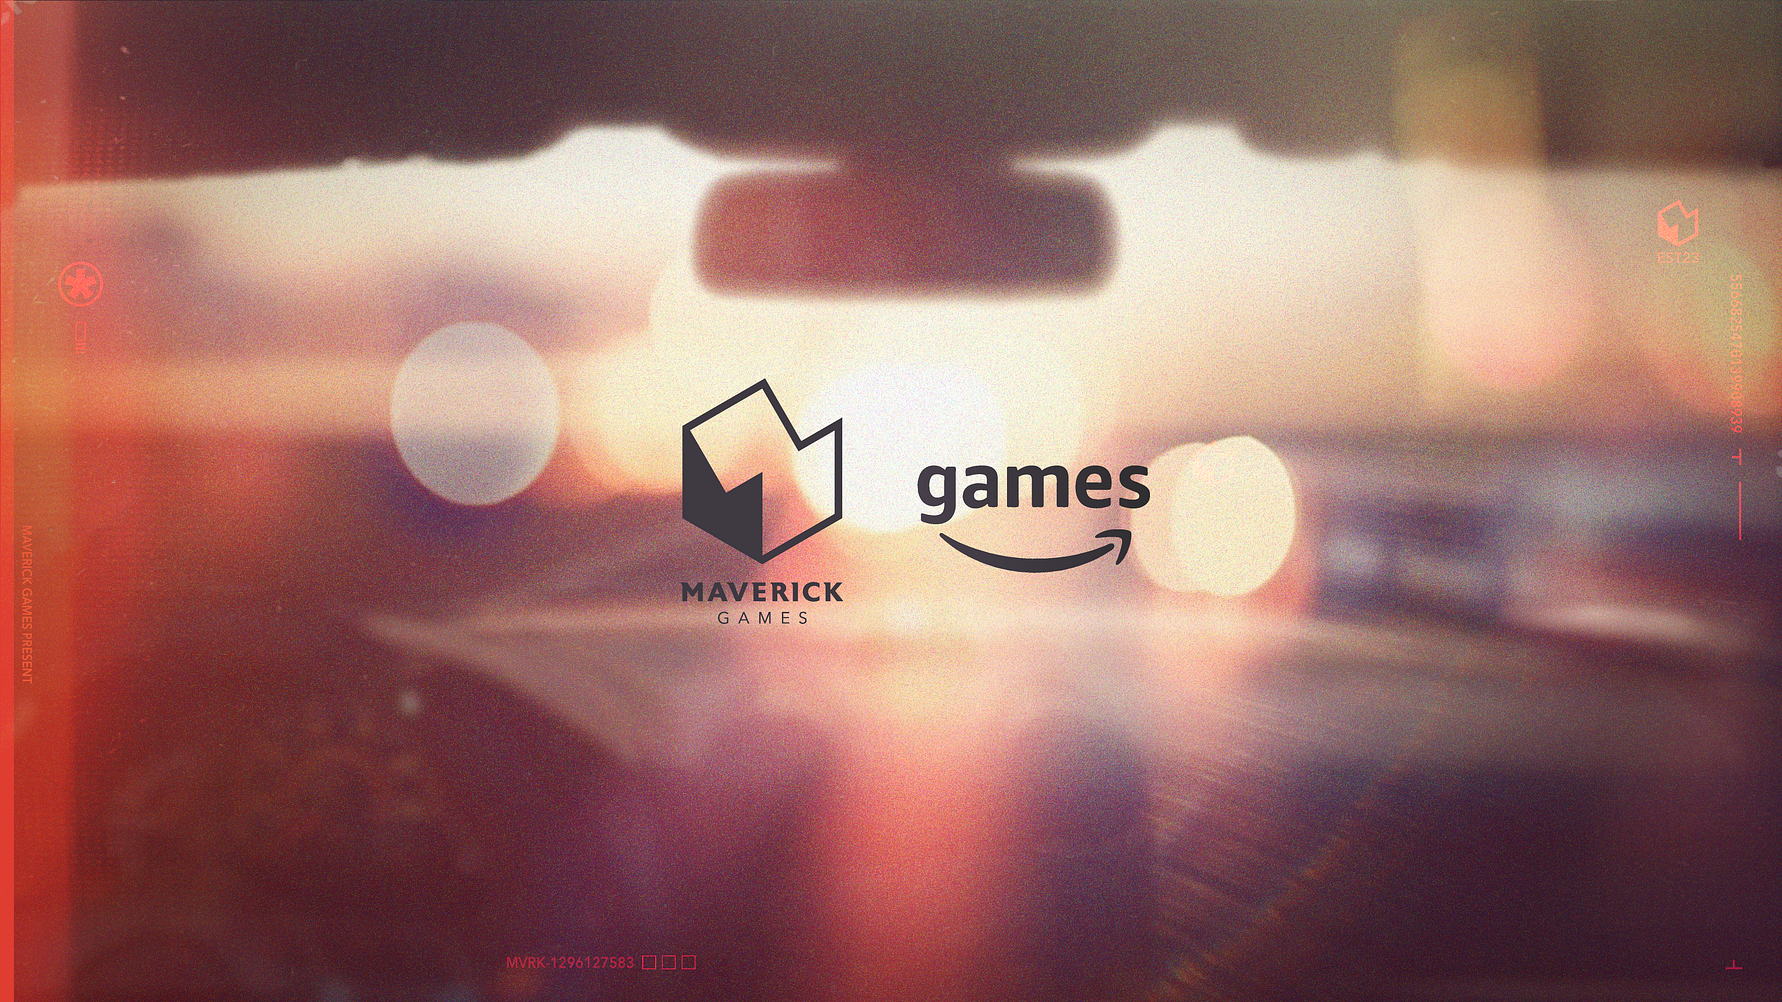 Amazon Games s’ajunta amb Maverick Games per a un nou joc de conducció de món obert